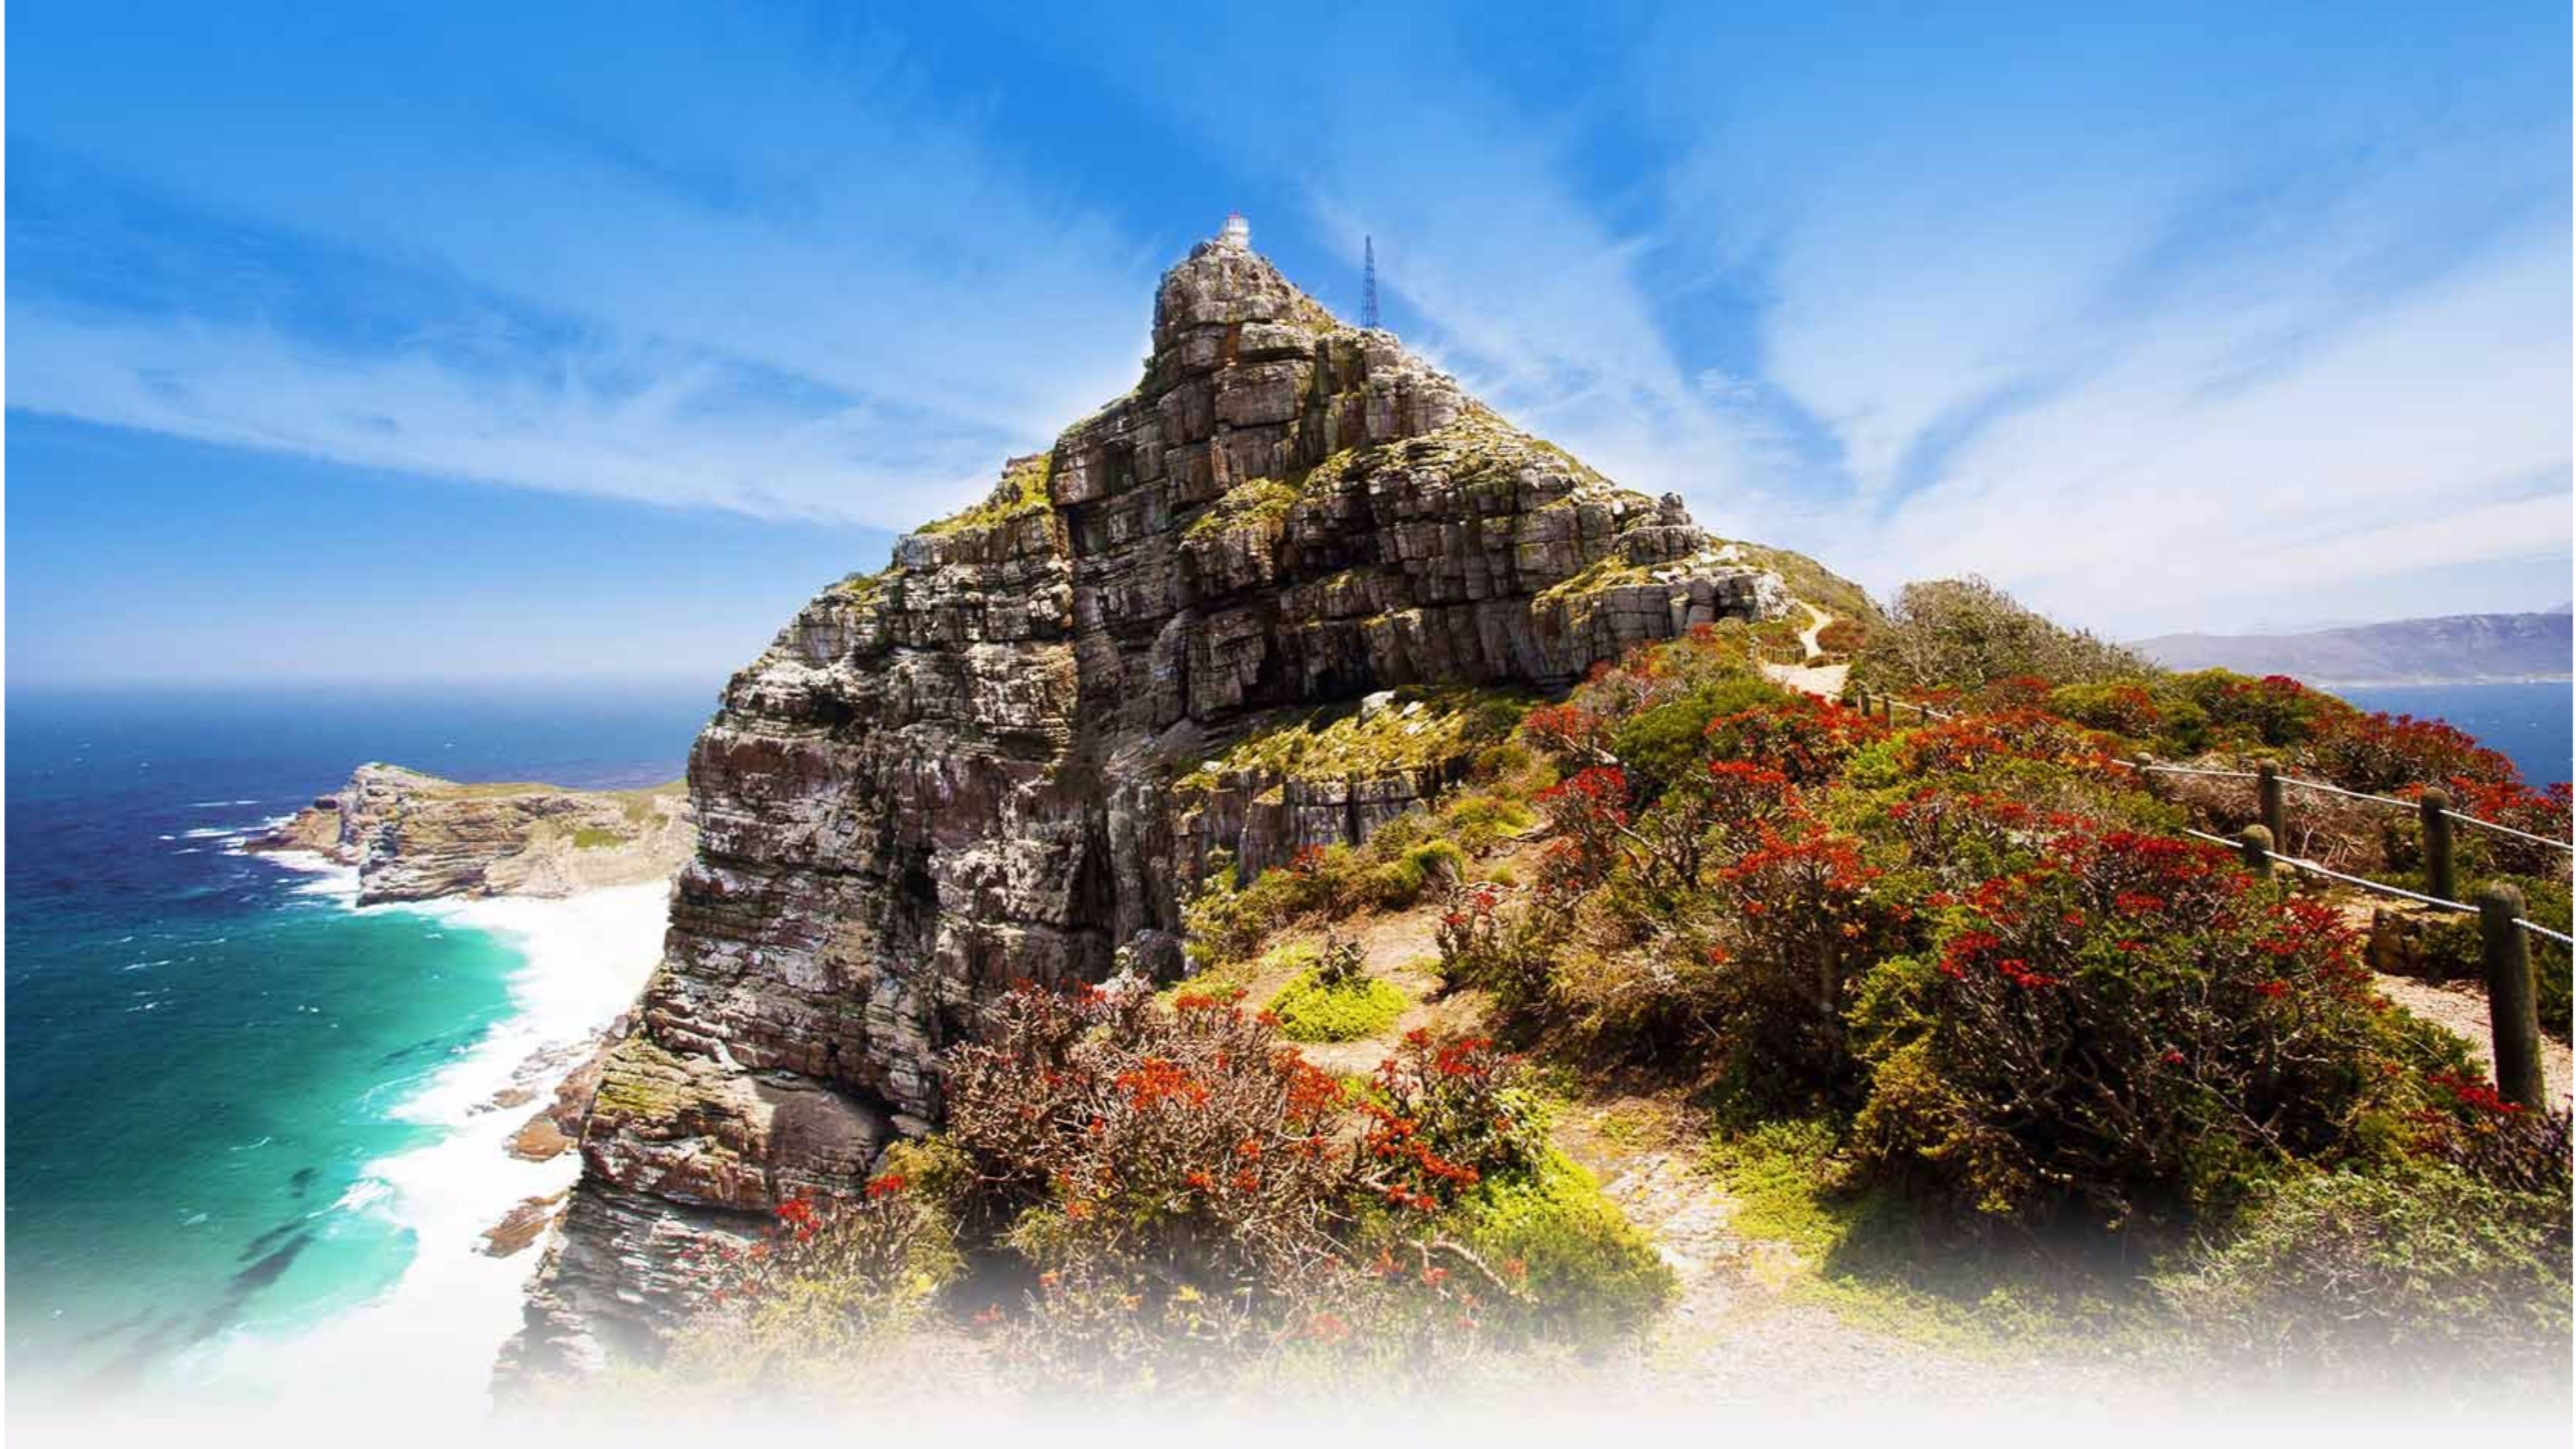 Cape Town Vineyards Stellenbosch , HD Wallpaper & Backgrounds